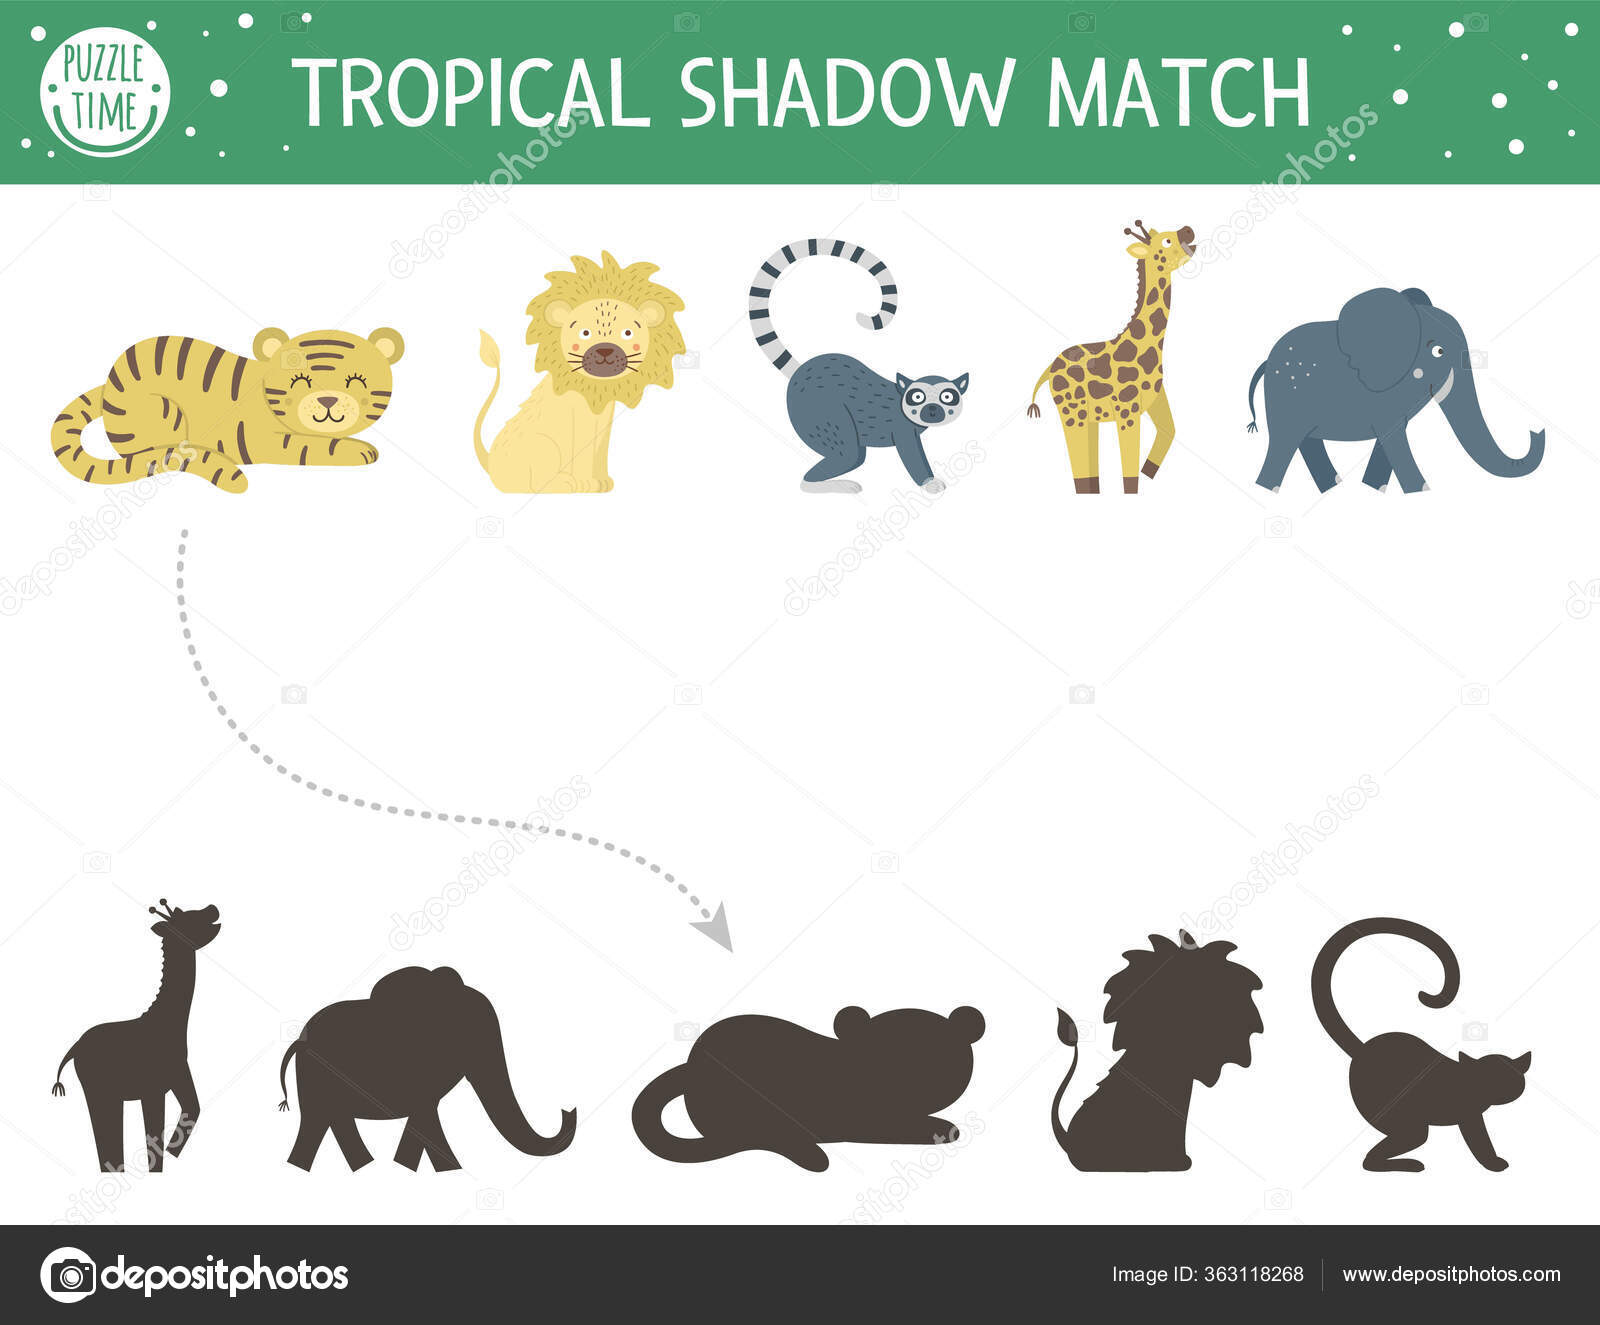 Encontrando a sombra correta do jogo de página de educação de animais fofos  para jardim de infância e pré-escola